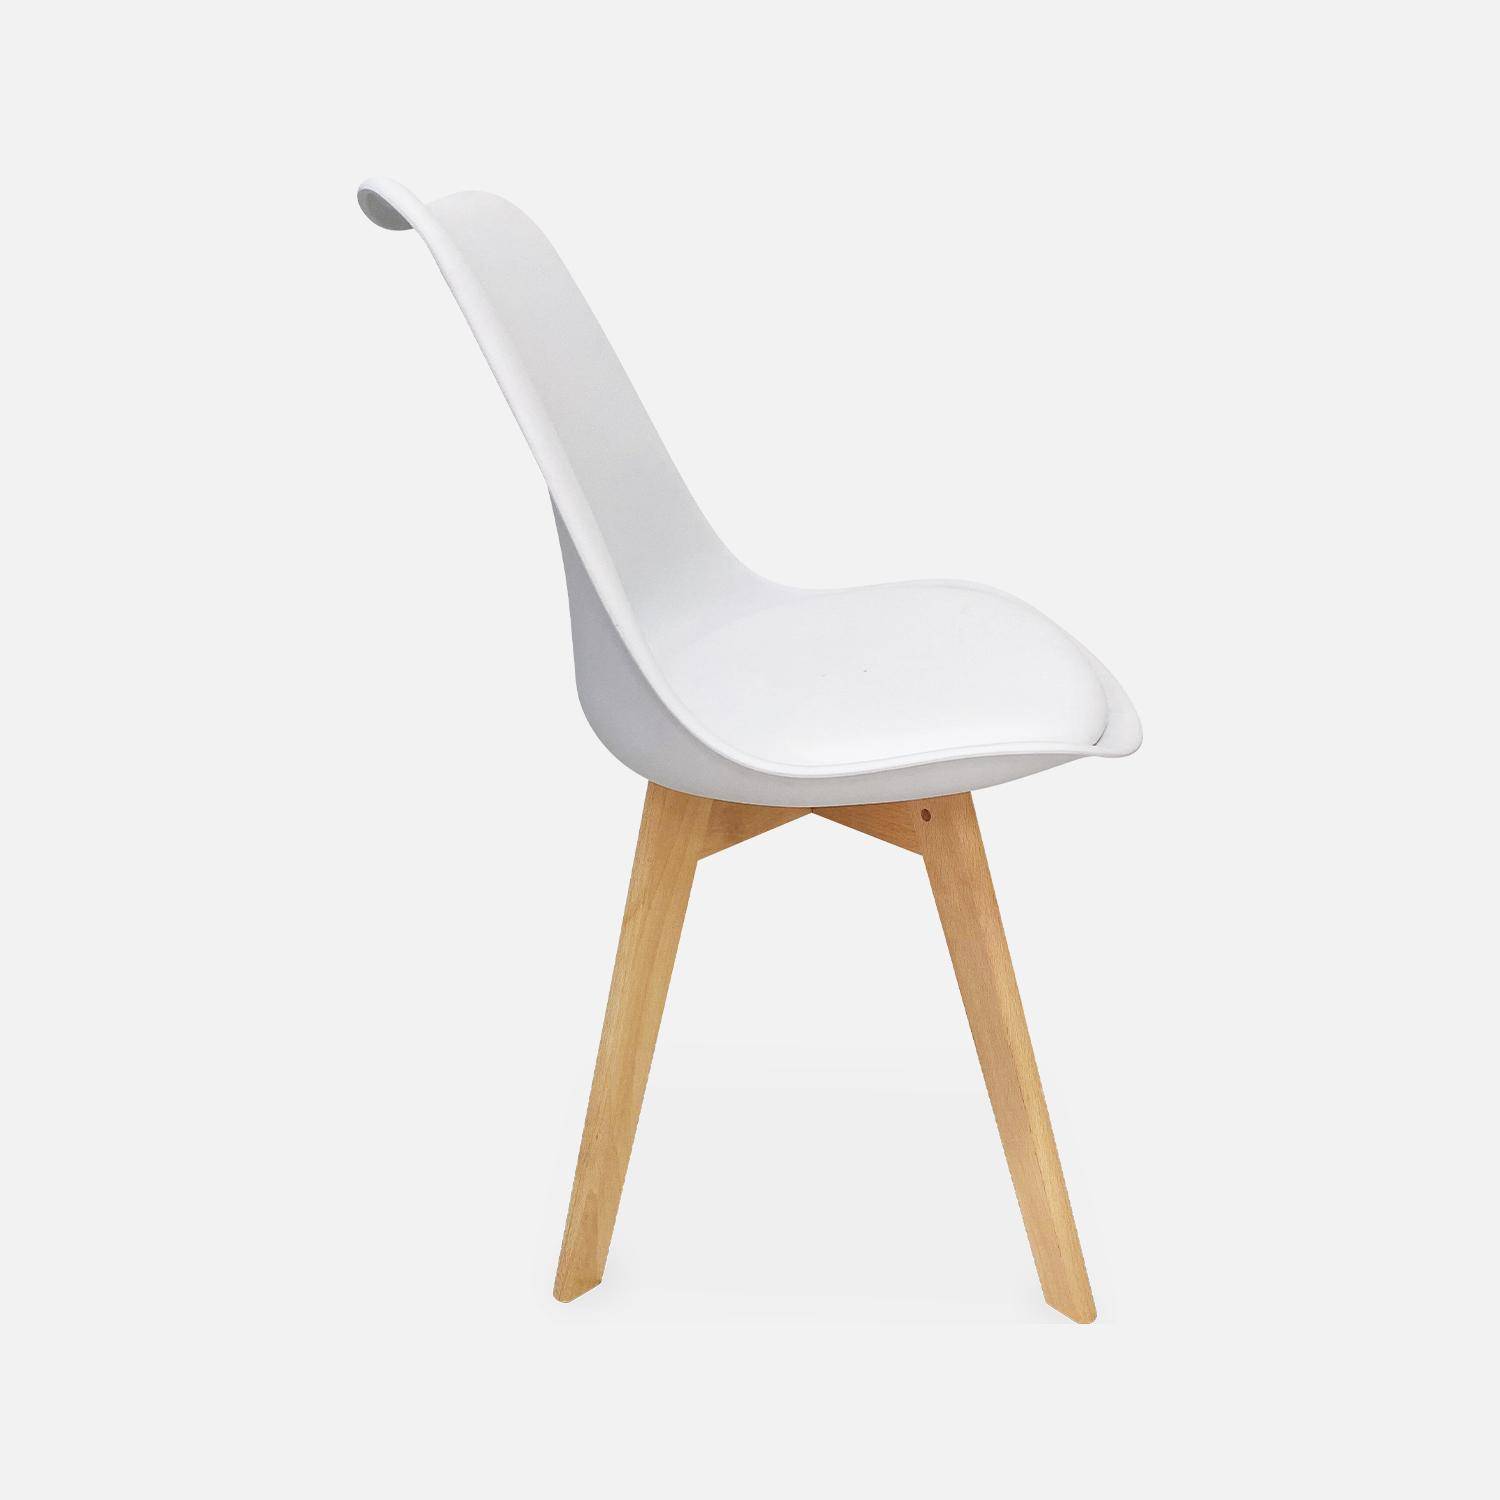 Juego de 6 sillas escandinavas, patas de madera de haya, monoplaza, blanco,sweeek,Photo6